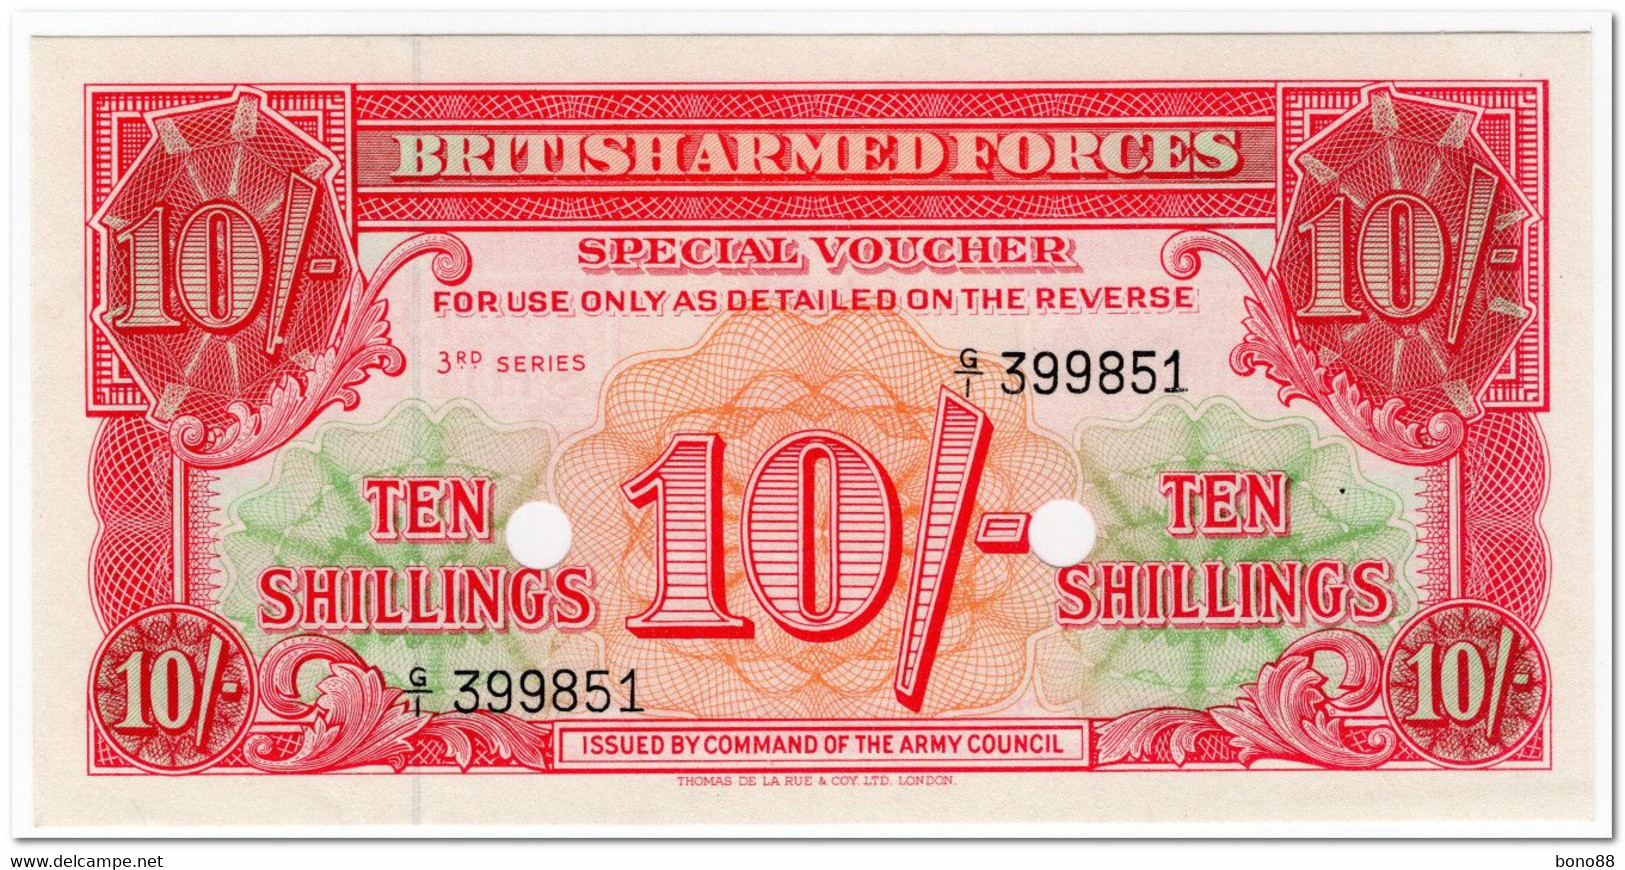 GREAT BRITAIN,BRITISH ARMED FORCES,10 SHILLINGS,1956,CANCELLEDP.M28a,UNC - Fuerzas Armadas Británicas & Recibos Especiales